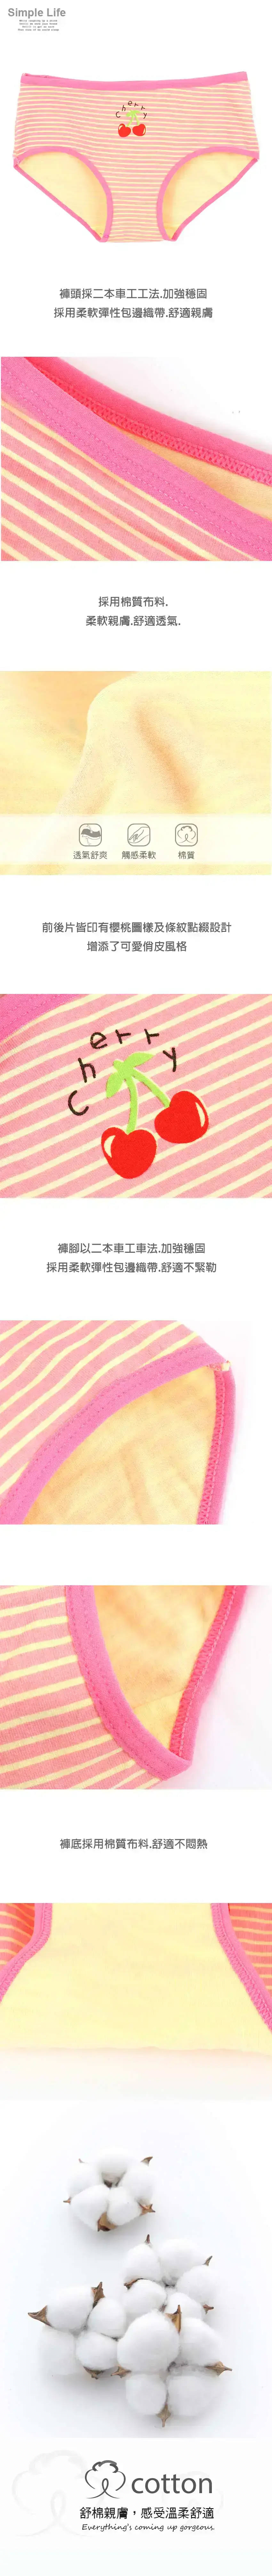 可愛櫻桃條紋棉質三角褲 3件組(隨機色)